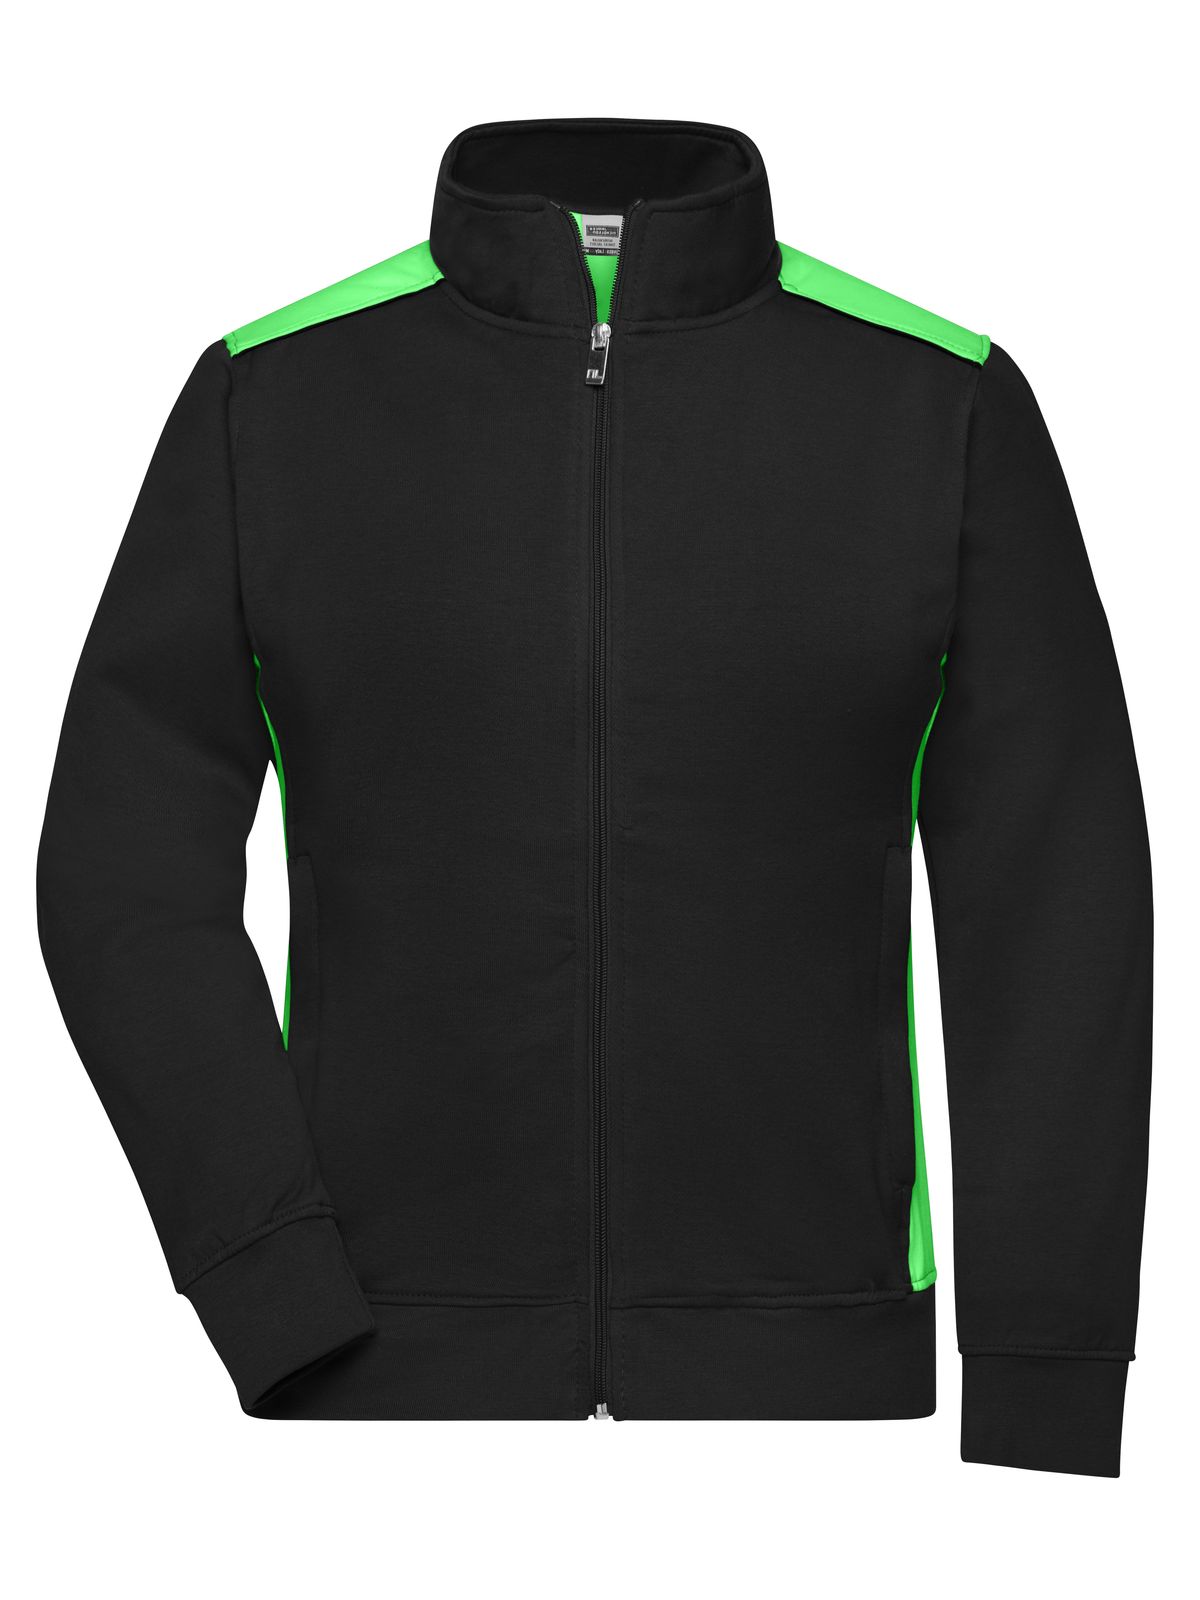 ladies-workwear-sweat-jacket-color-black-lime-green.webp